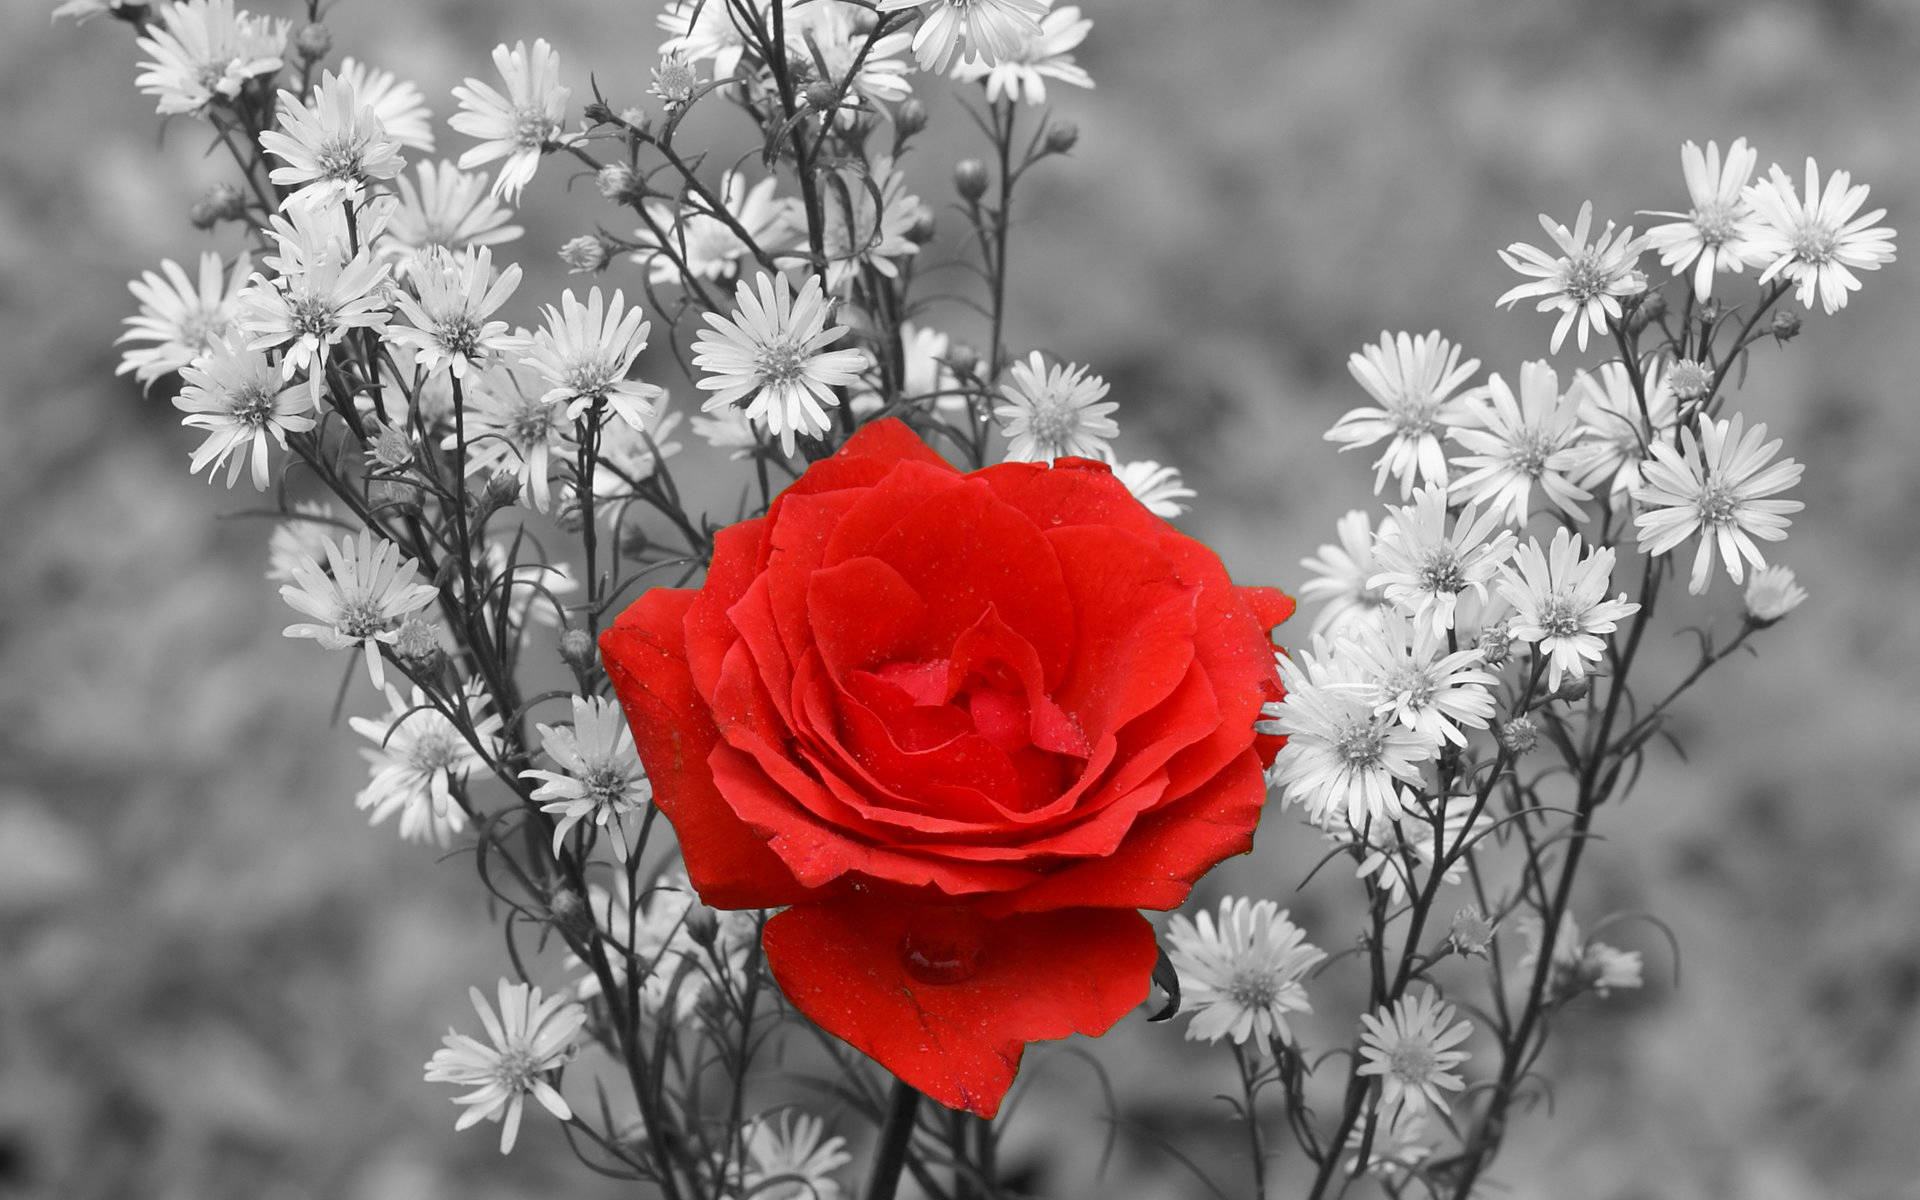 Hình nền hoa hồng đỏ sẽ thể hiện sự sang trọng và quý phái cho màn hình điện thoại của bạn. Hãy cập nhật cho mình một phong cách mới và tươi trẻ với hình ảnh nền hoa hồng đỏ đẹp nhất.